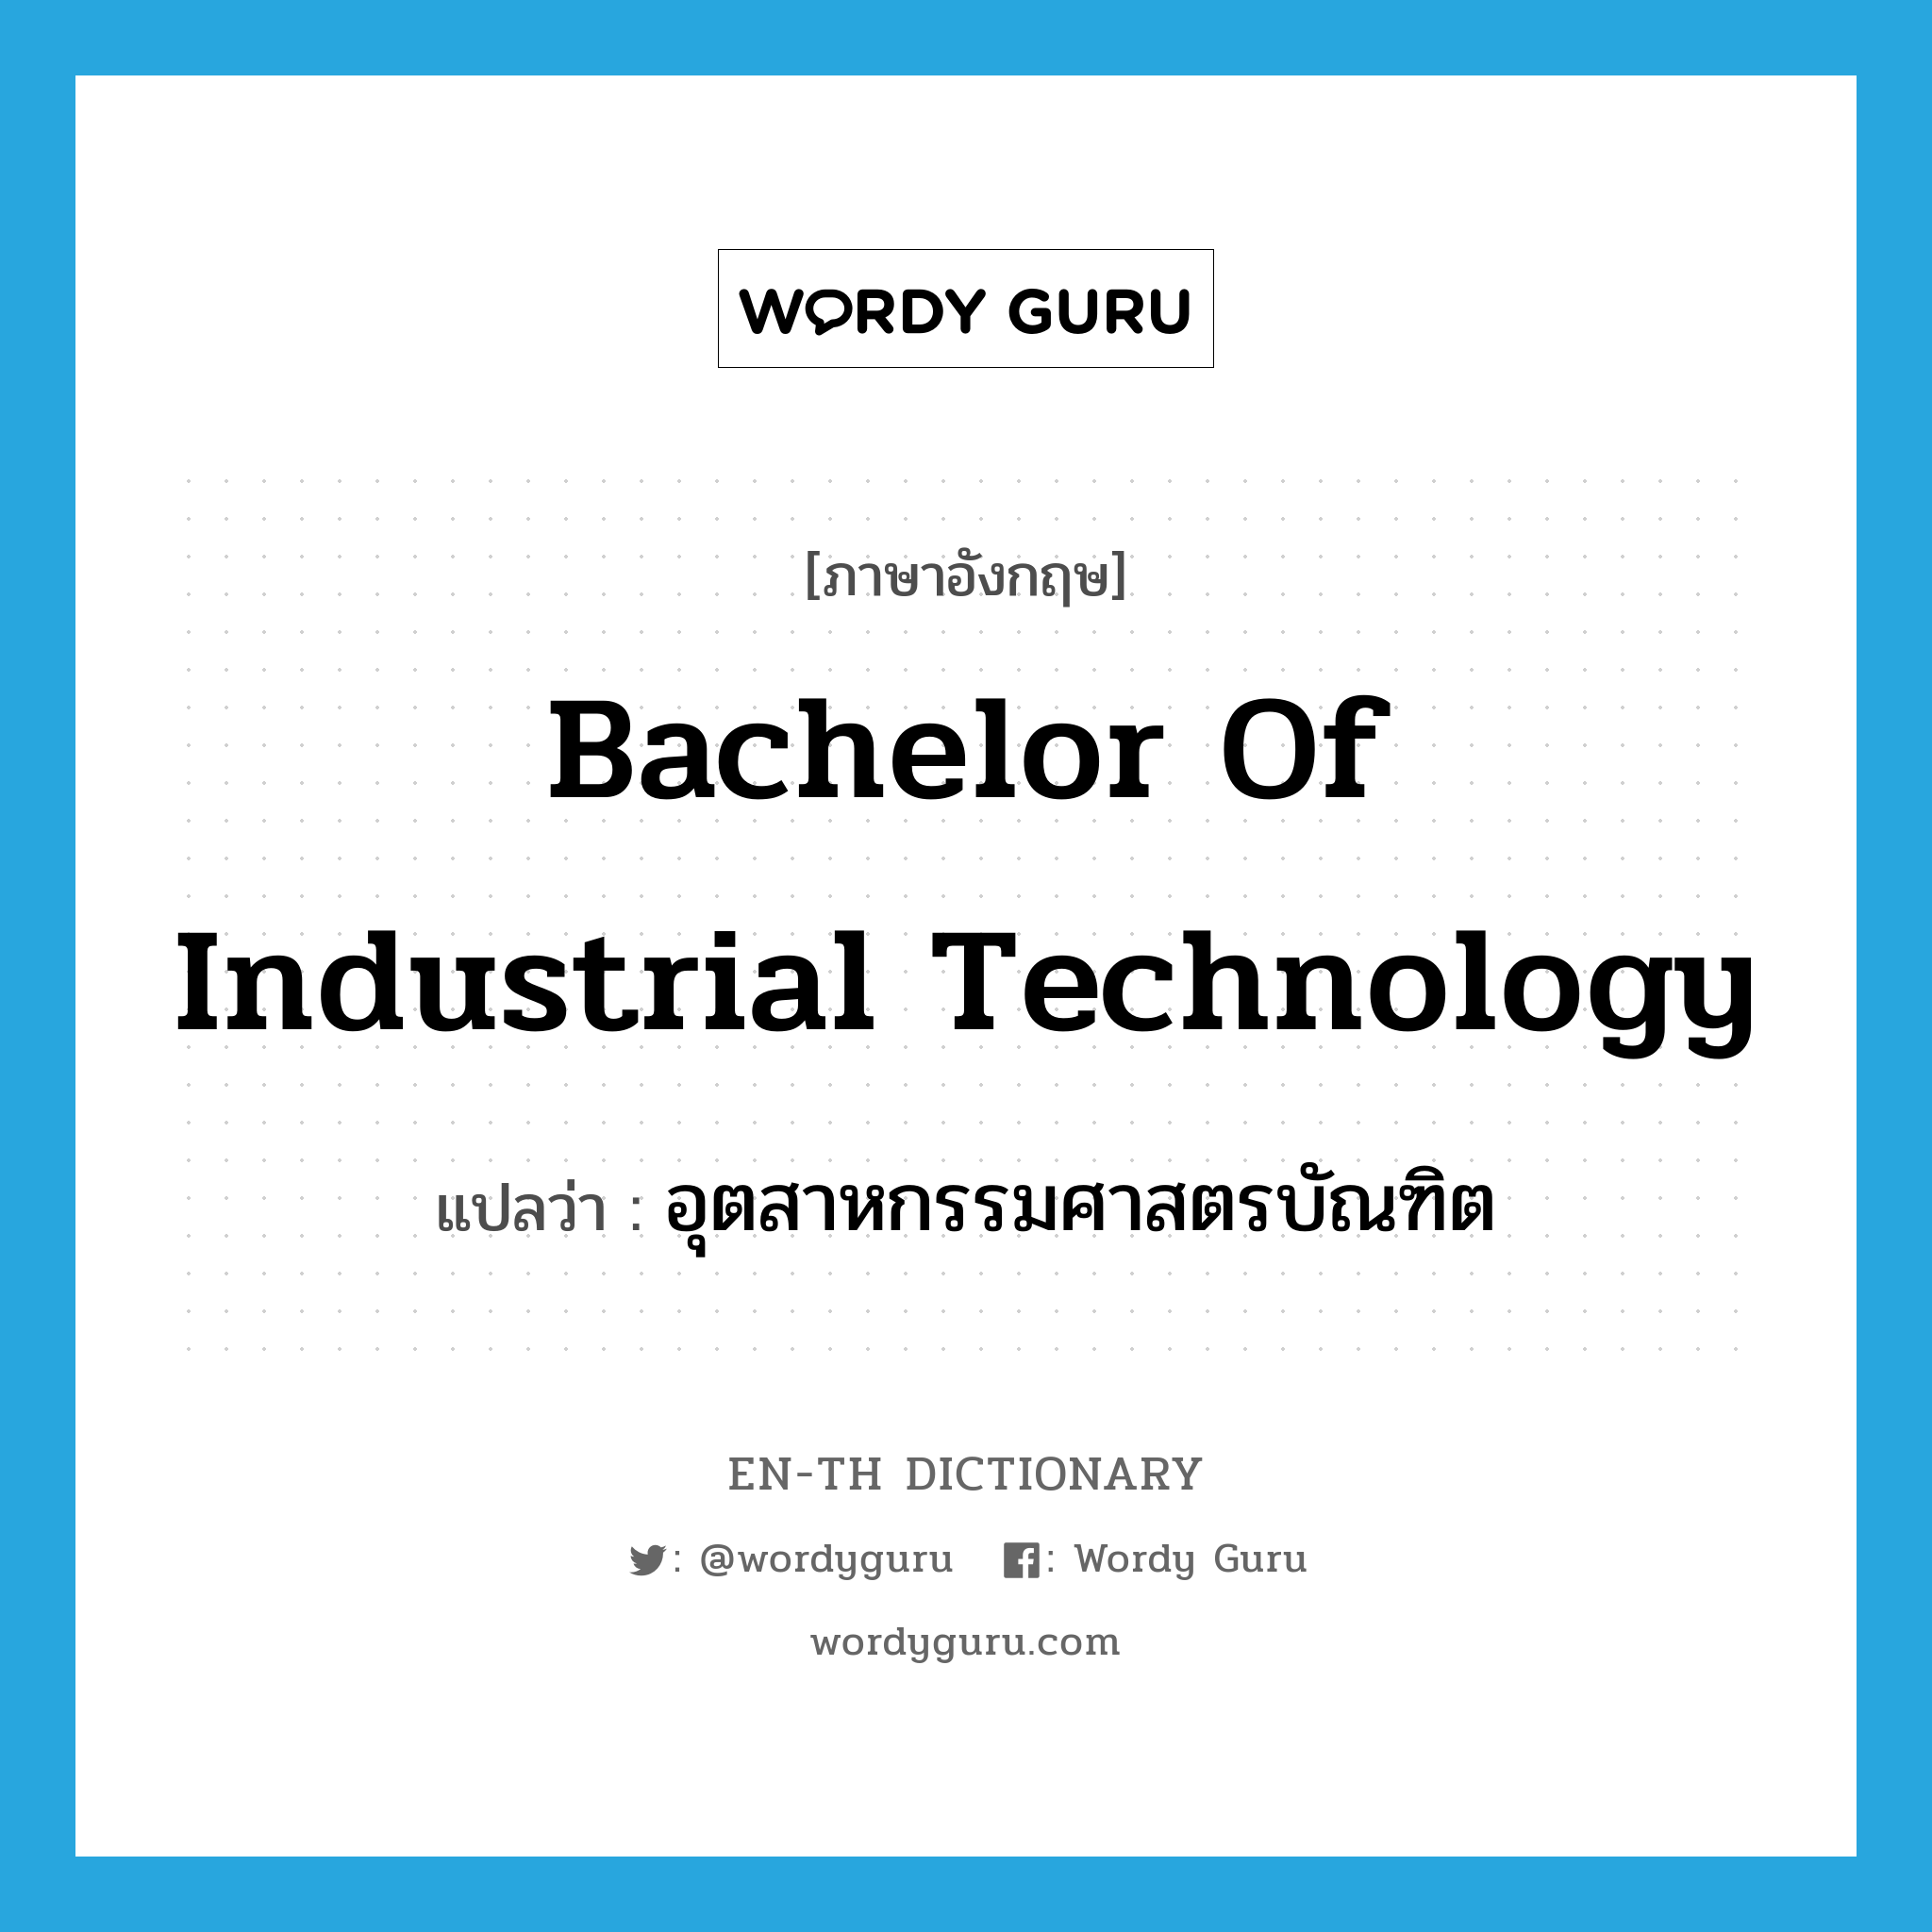 อุตสาหกรรมศาสตรบัณฑิต ภาษาอังกฤษ?, คำศัพท์ภาษาอังกฤษ อุตสาหกรรมศาสตรบัณฑิต แปลว่า Bachelor of Industrial Technology ประเภท N หมวด N